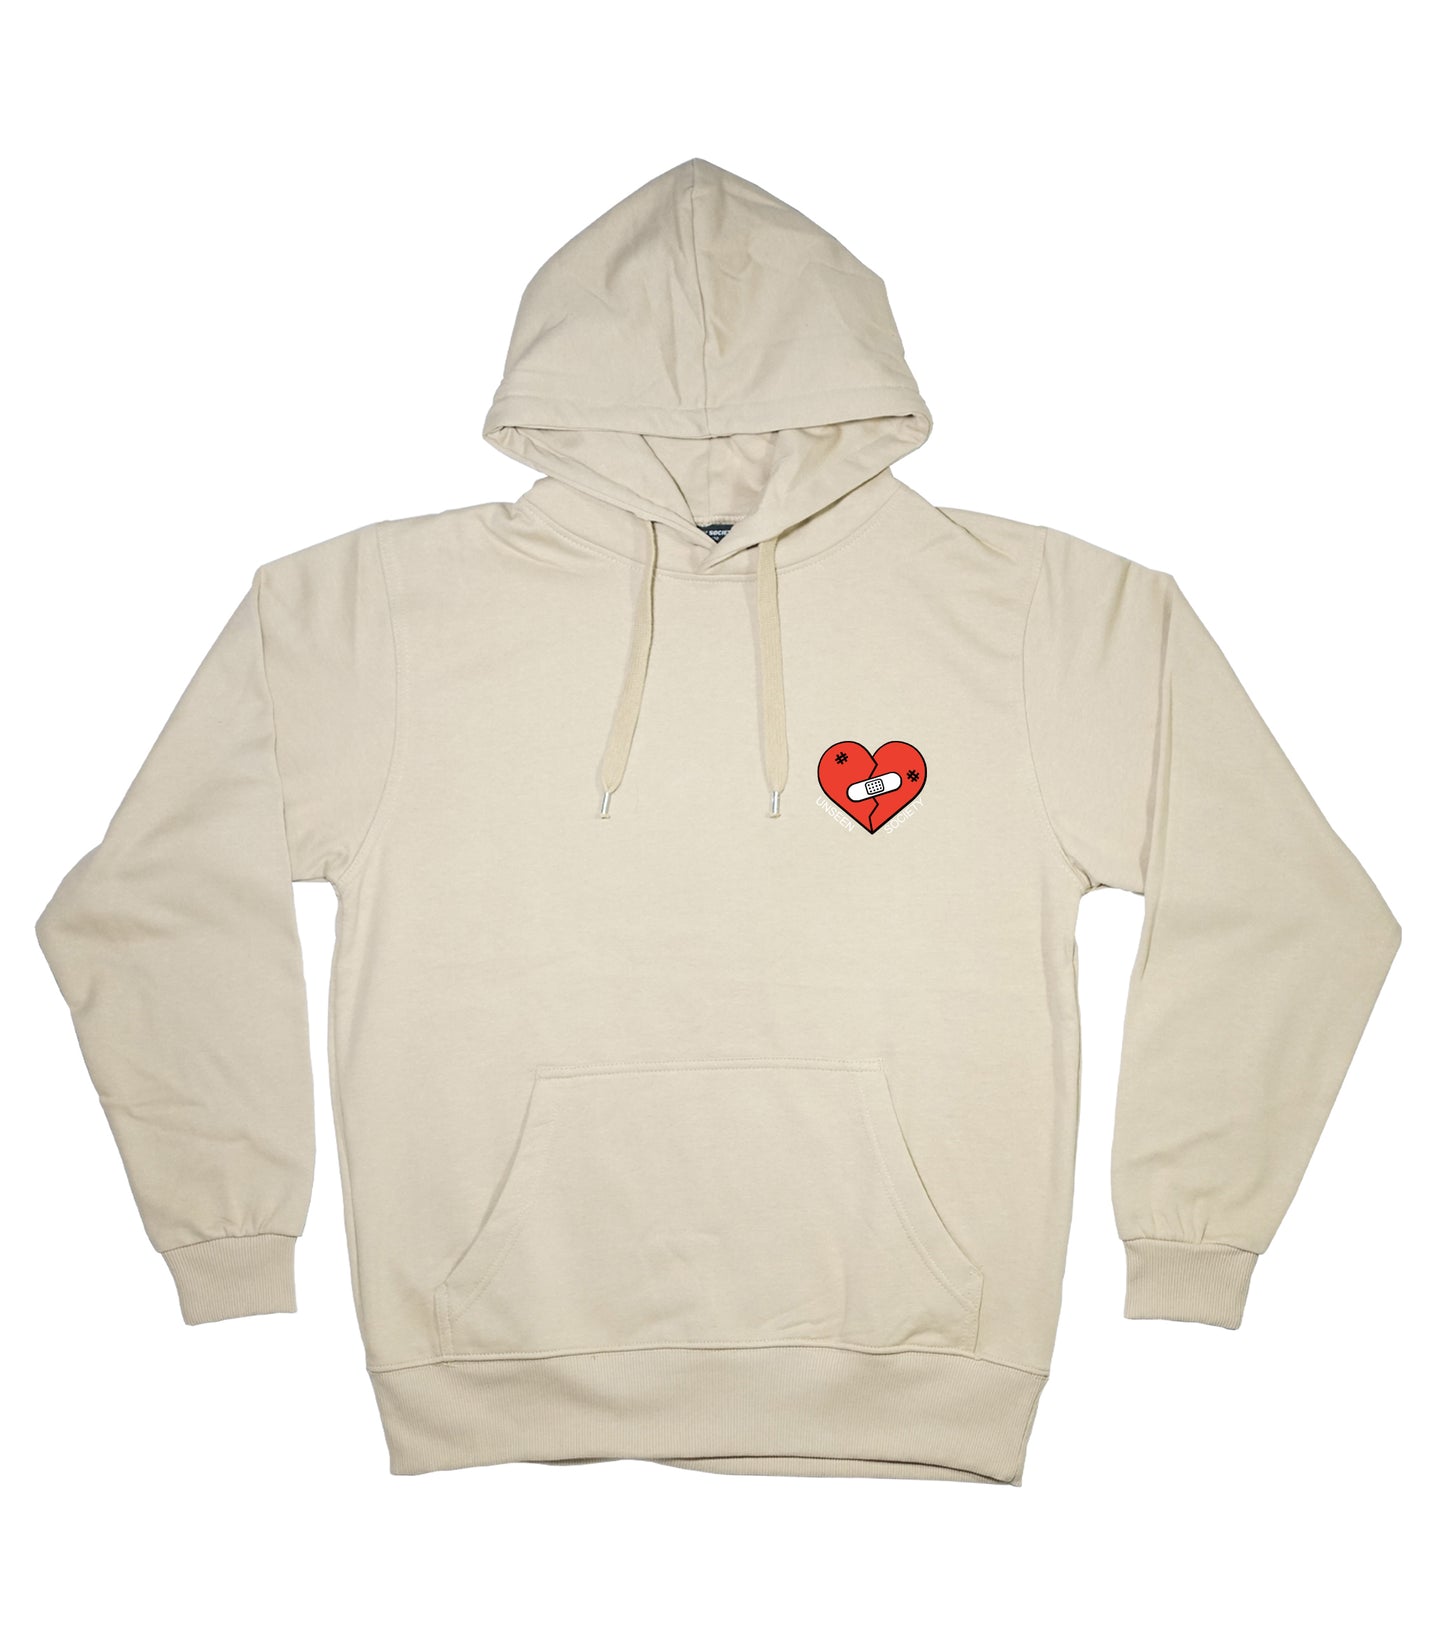 Broken heart hoodie